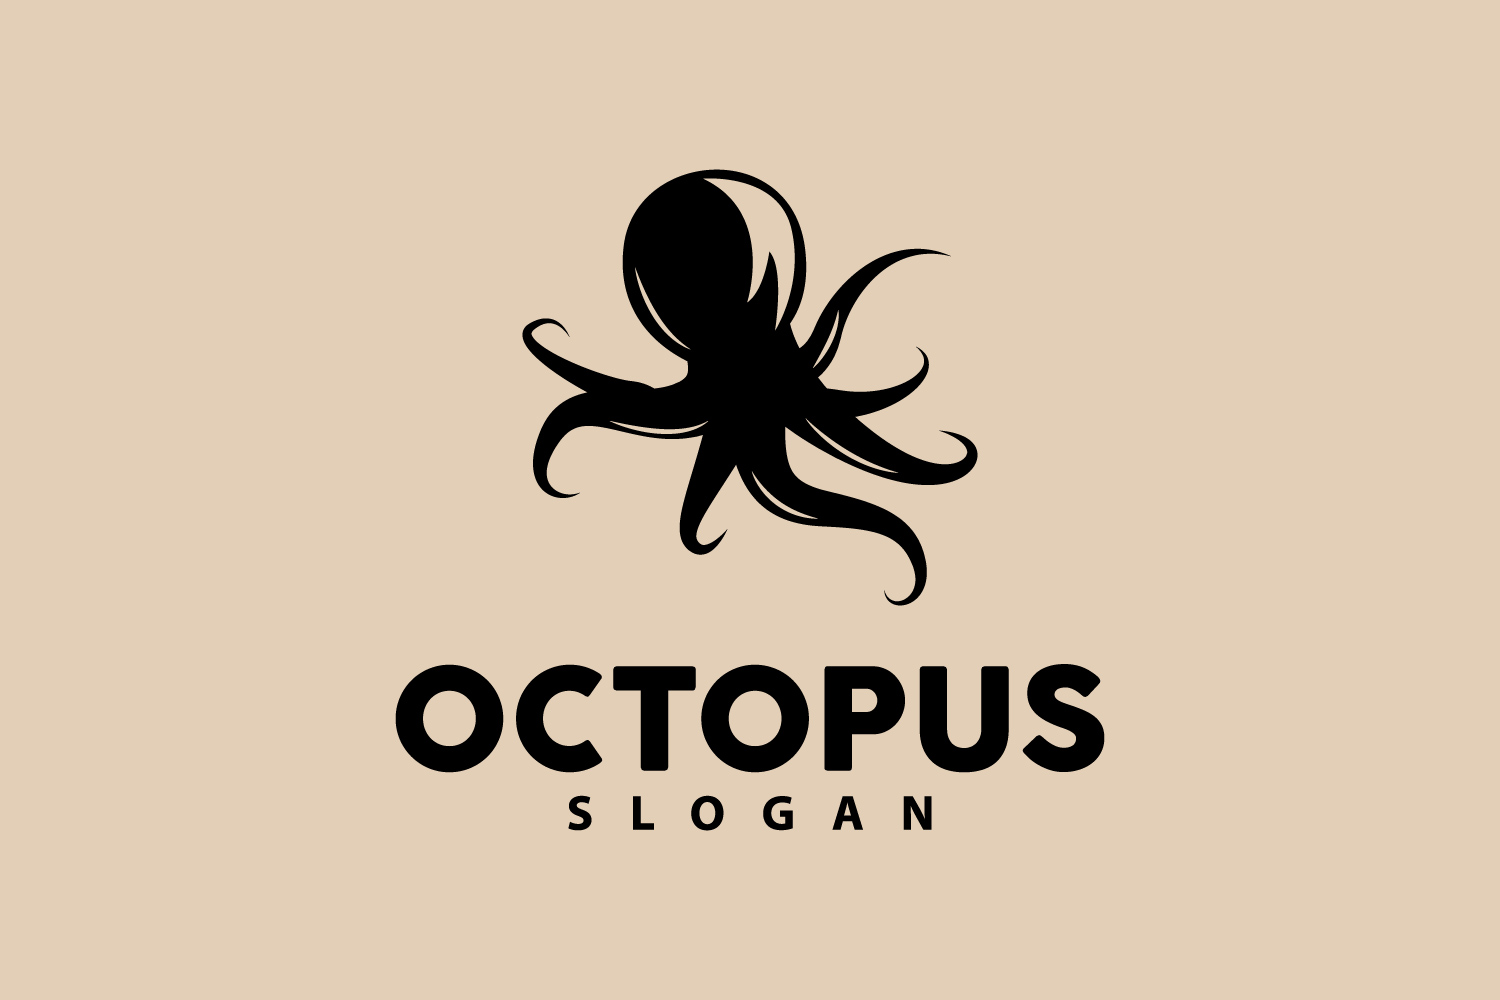 Octopus Logo Old Retro Vintage DesignV3